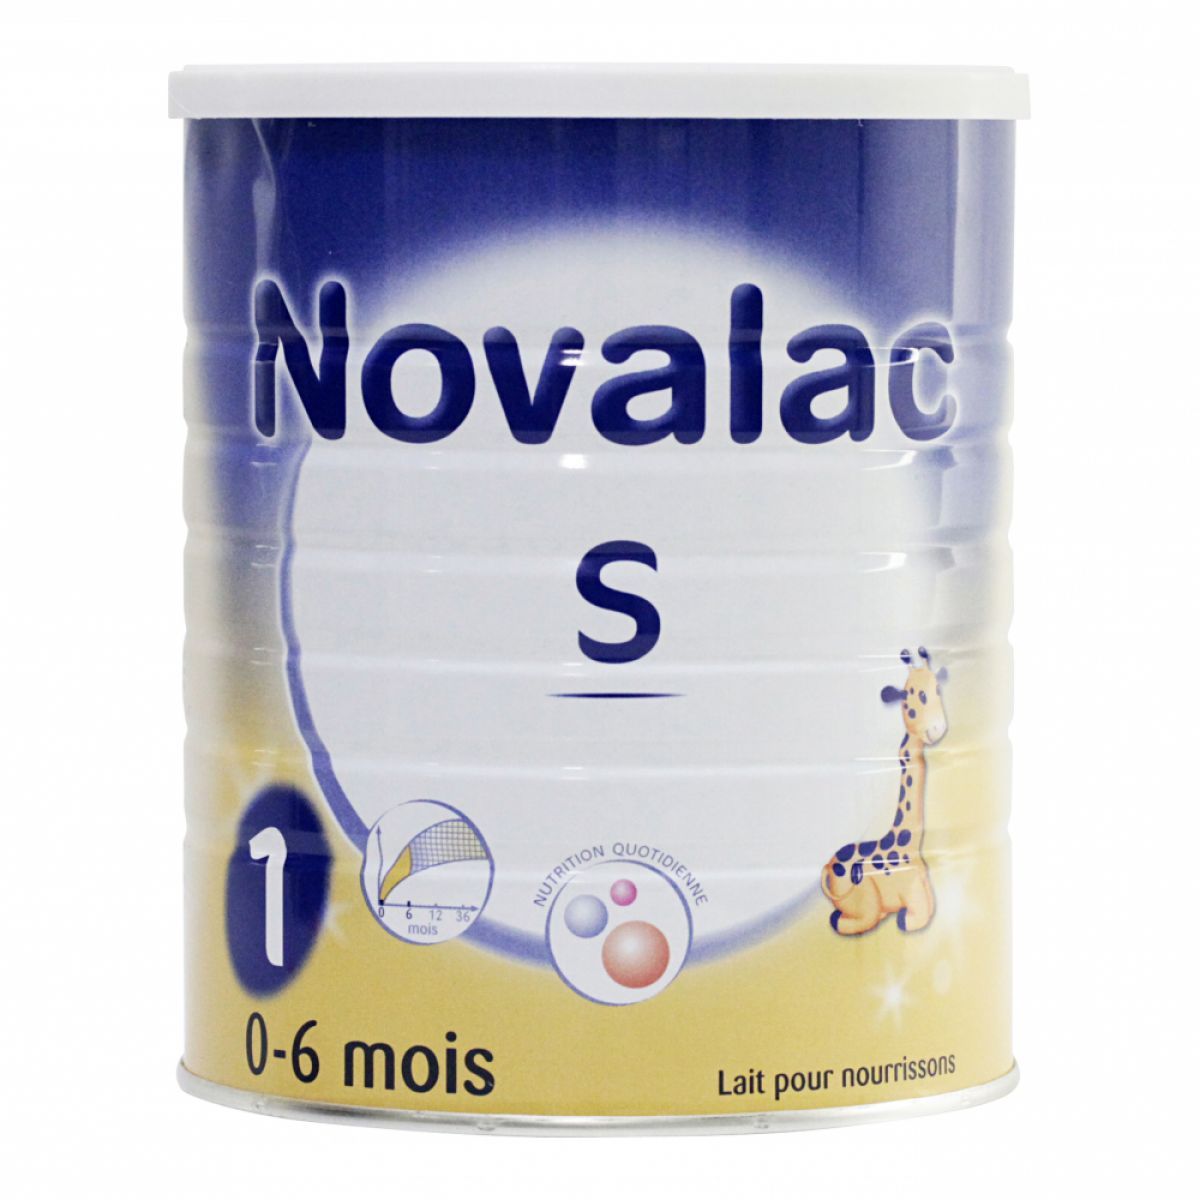 le lait s 1 novalac est un lait pour bébé de 0 à 6 mois ayant grand appétit  - Novalac